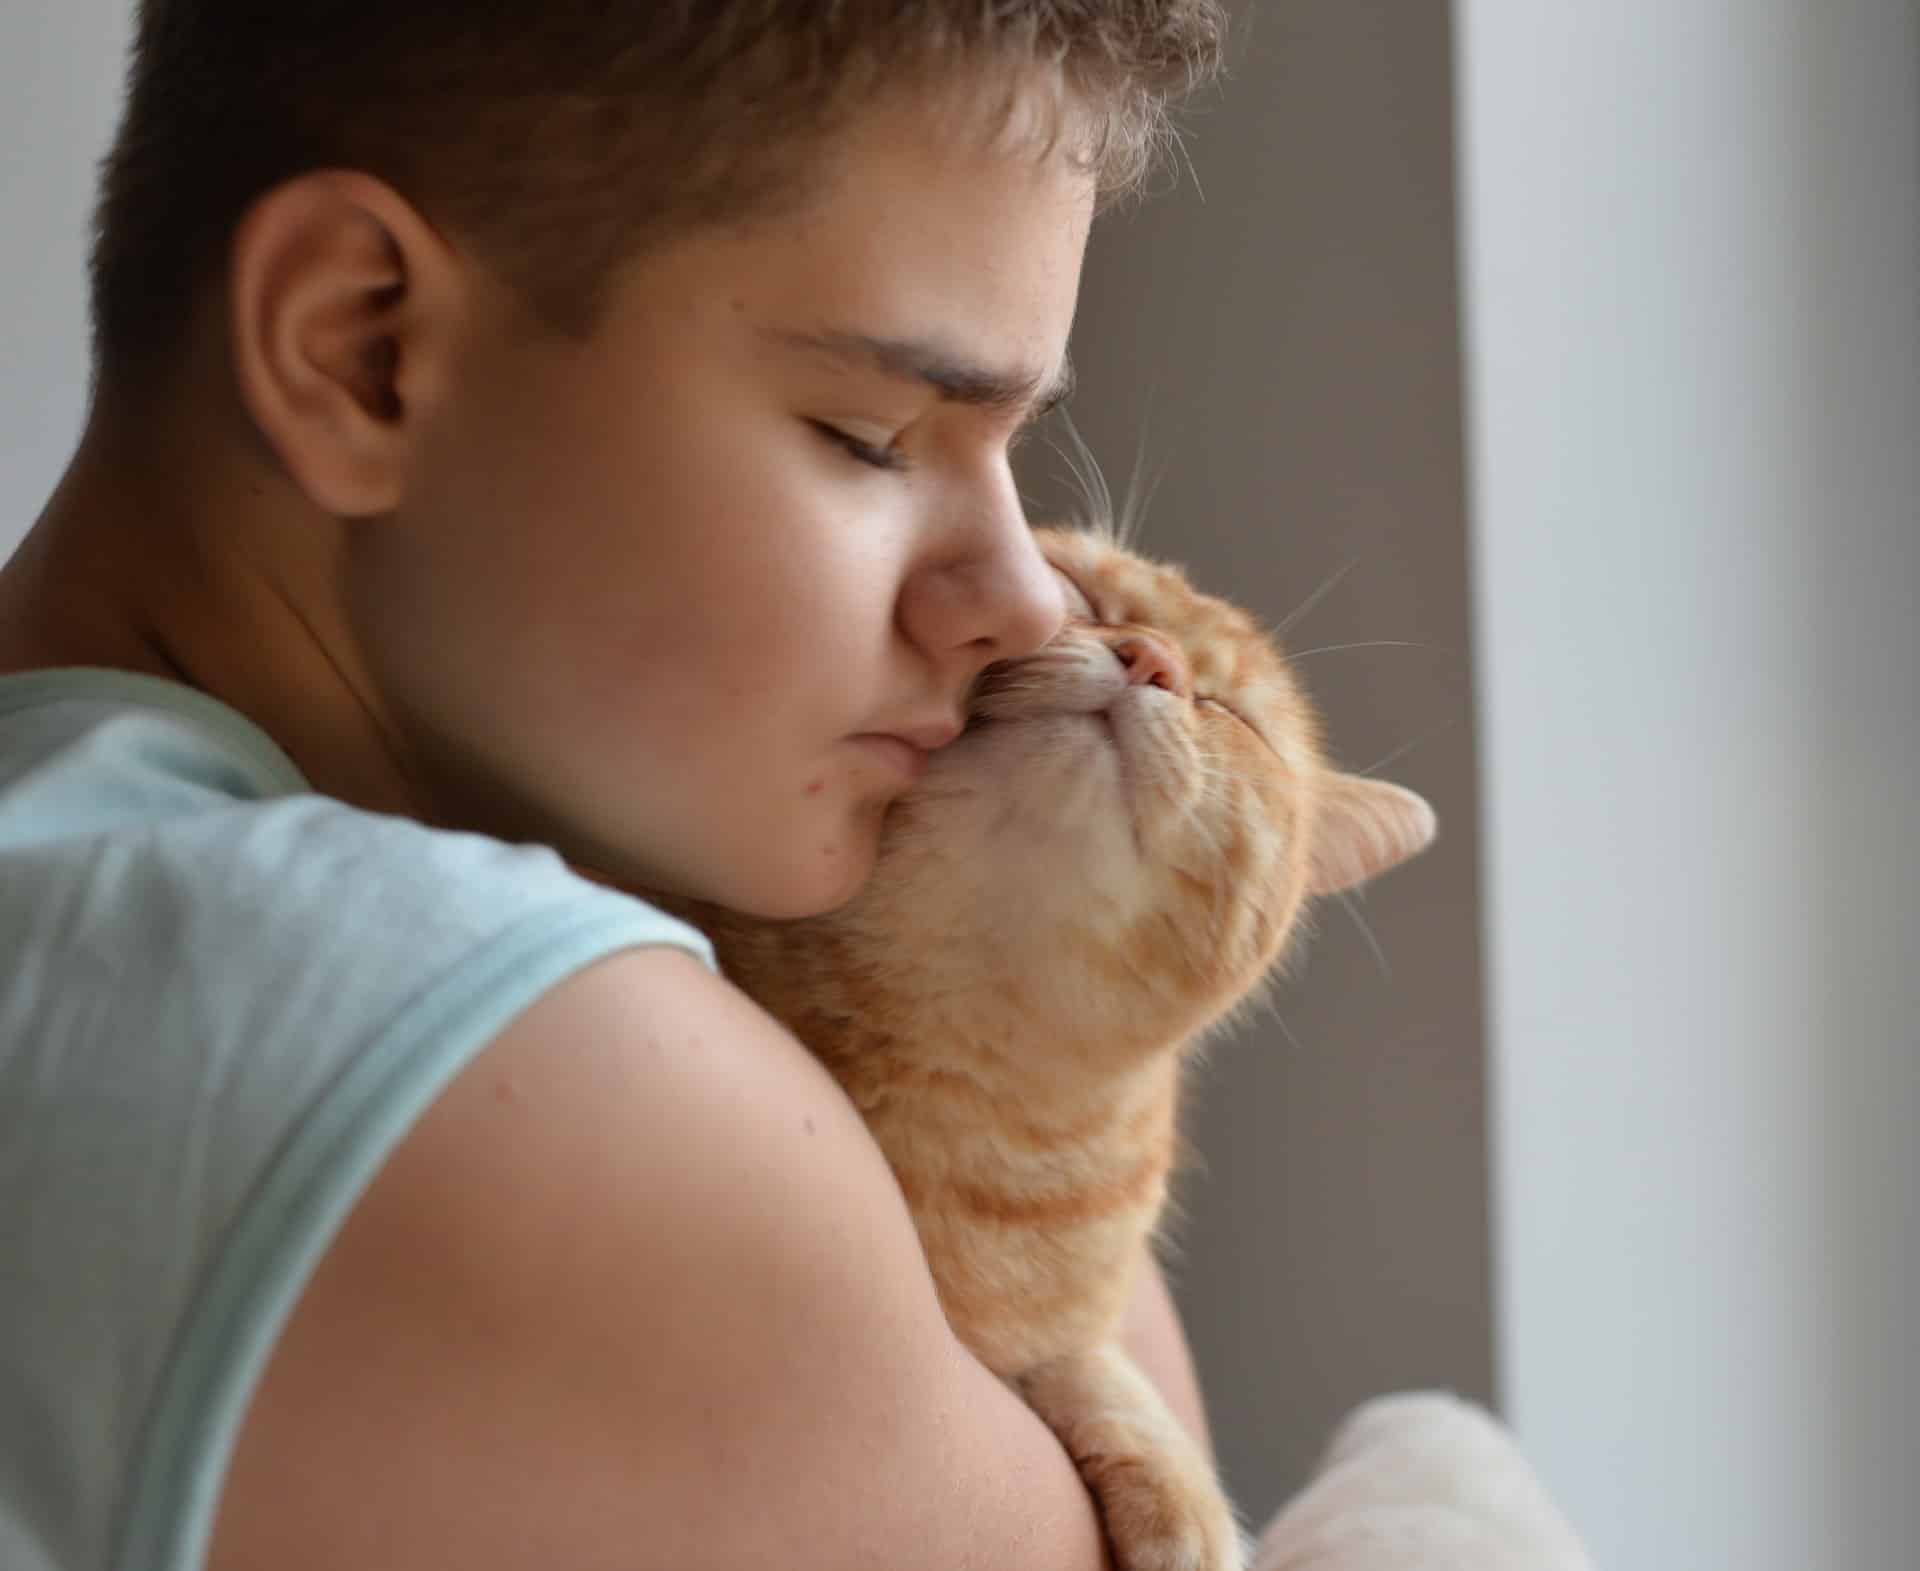 A teen boy cuddles a happy orange tabby cat